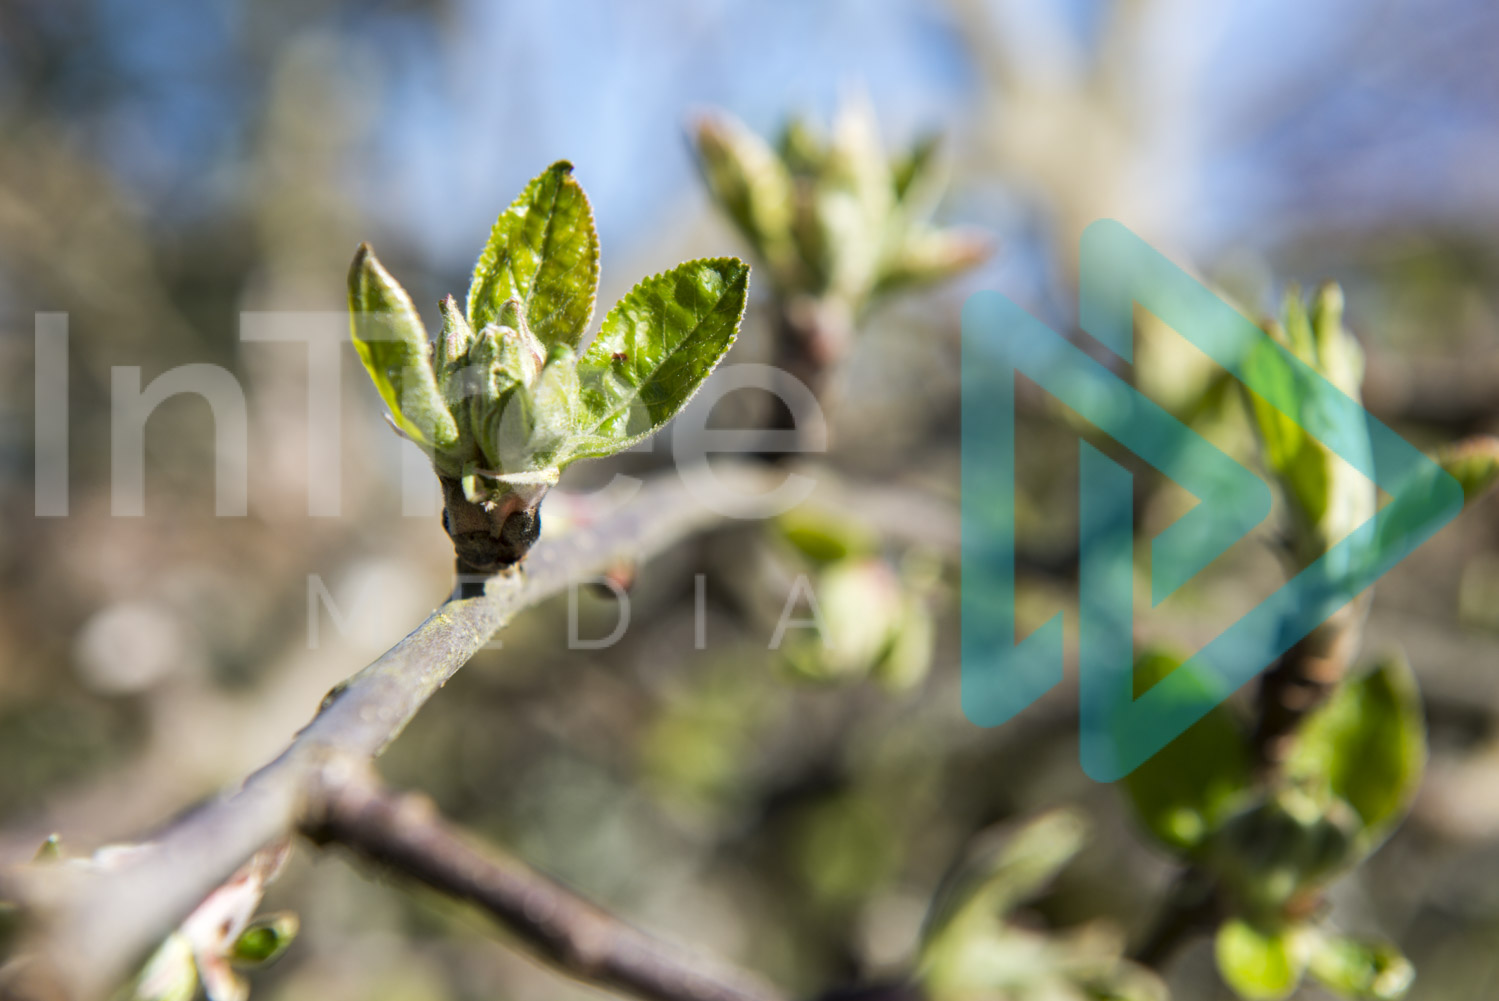 Apple tree bud burst in Spring InTree arborist image 001-21-5395